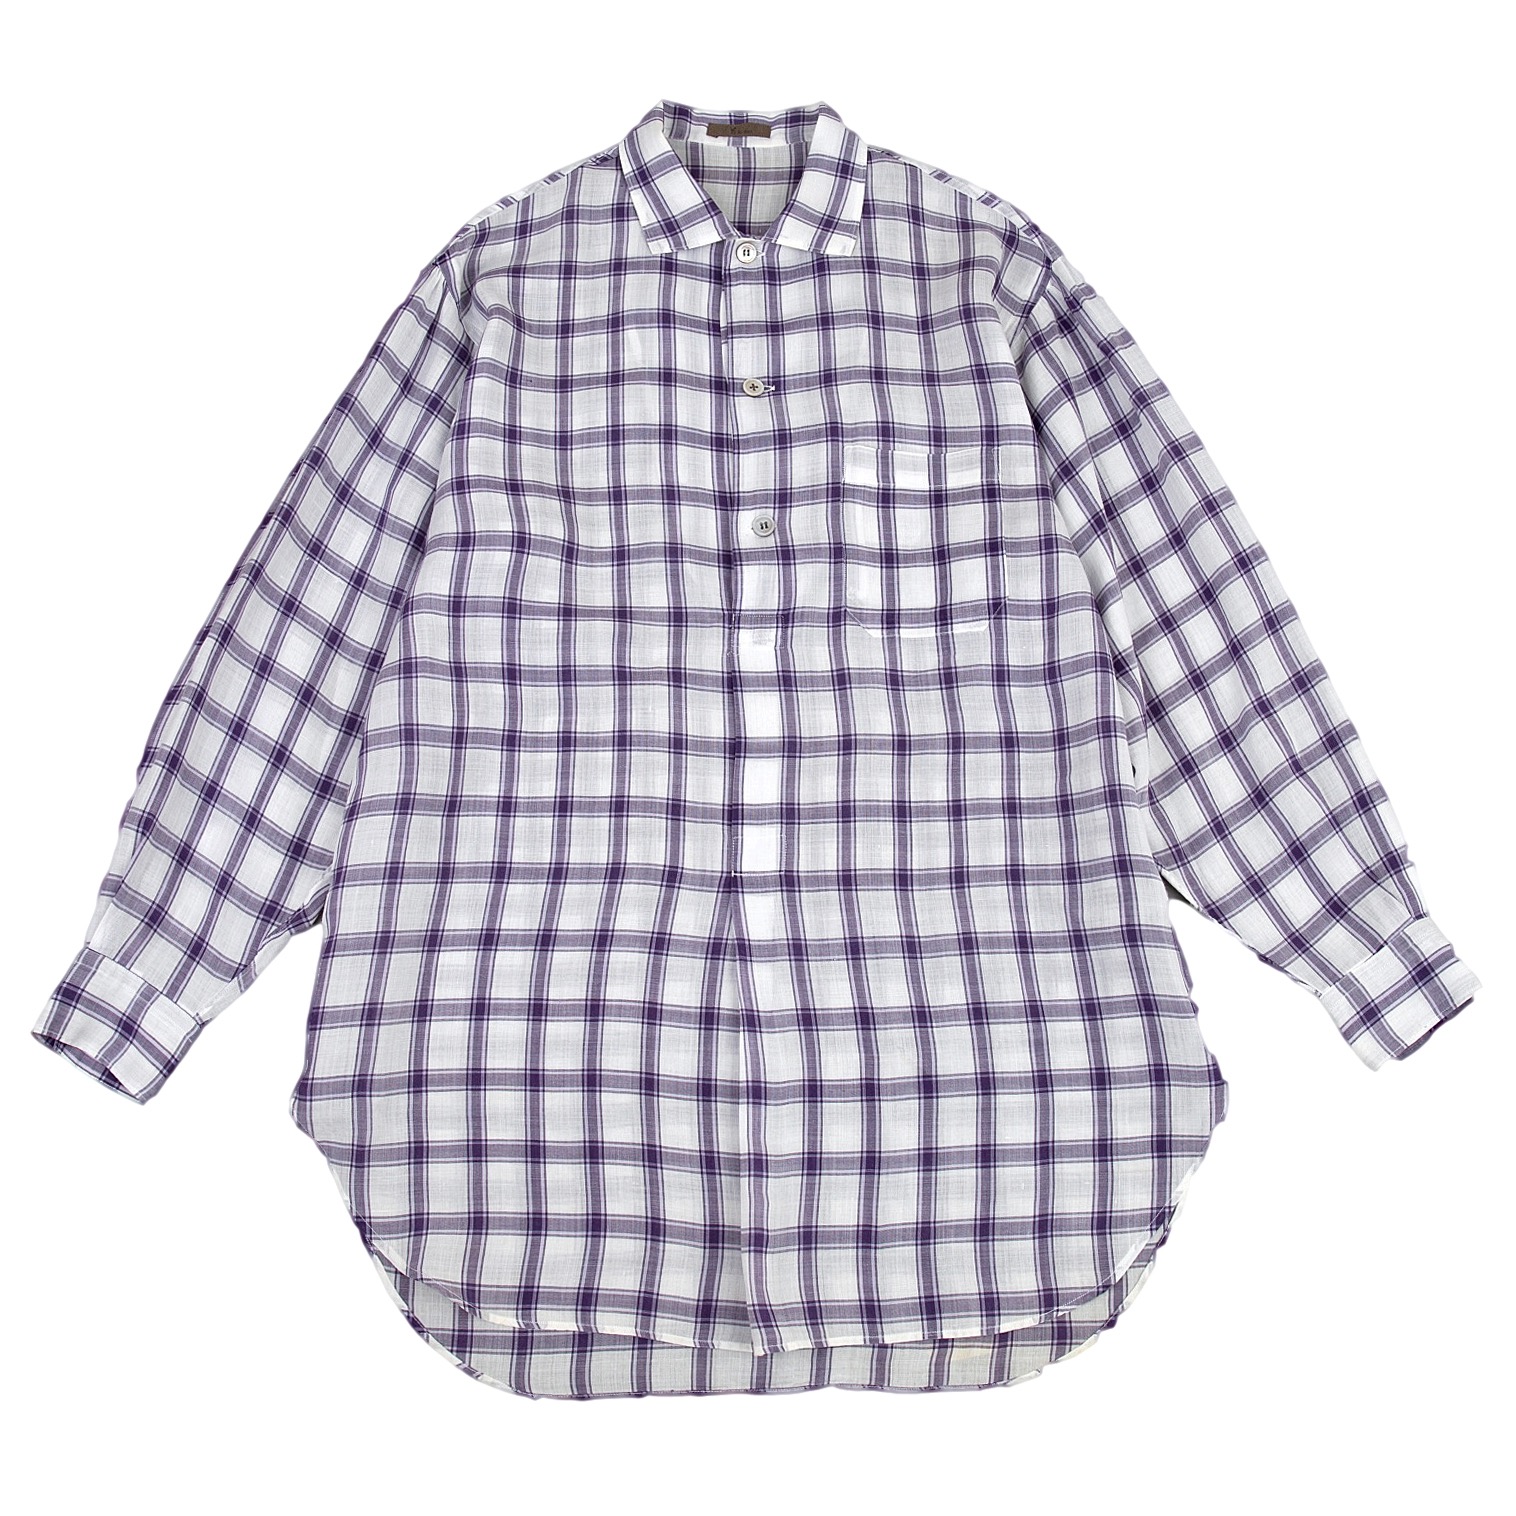 ワイズフォーメンY's for men リネンプルオーバーチェックシャツ 白紫M位